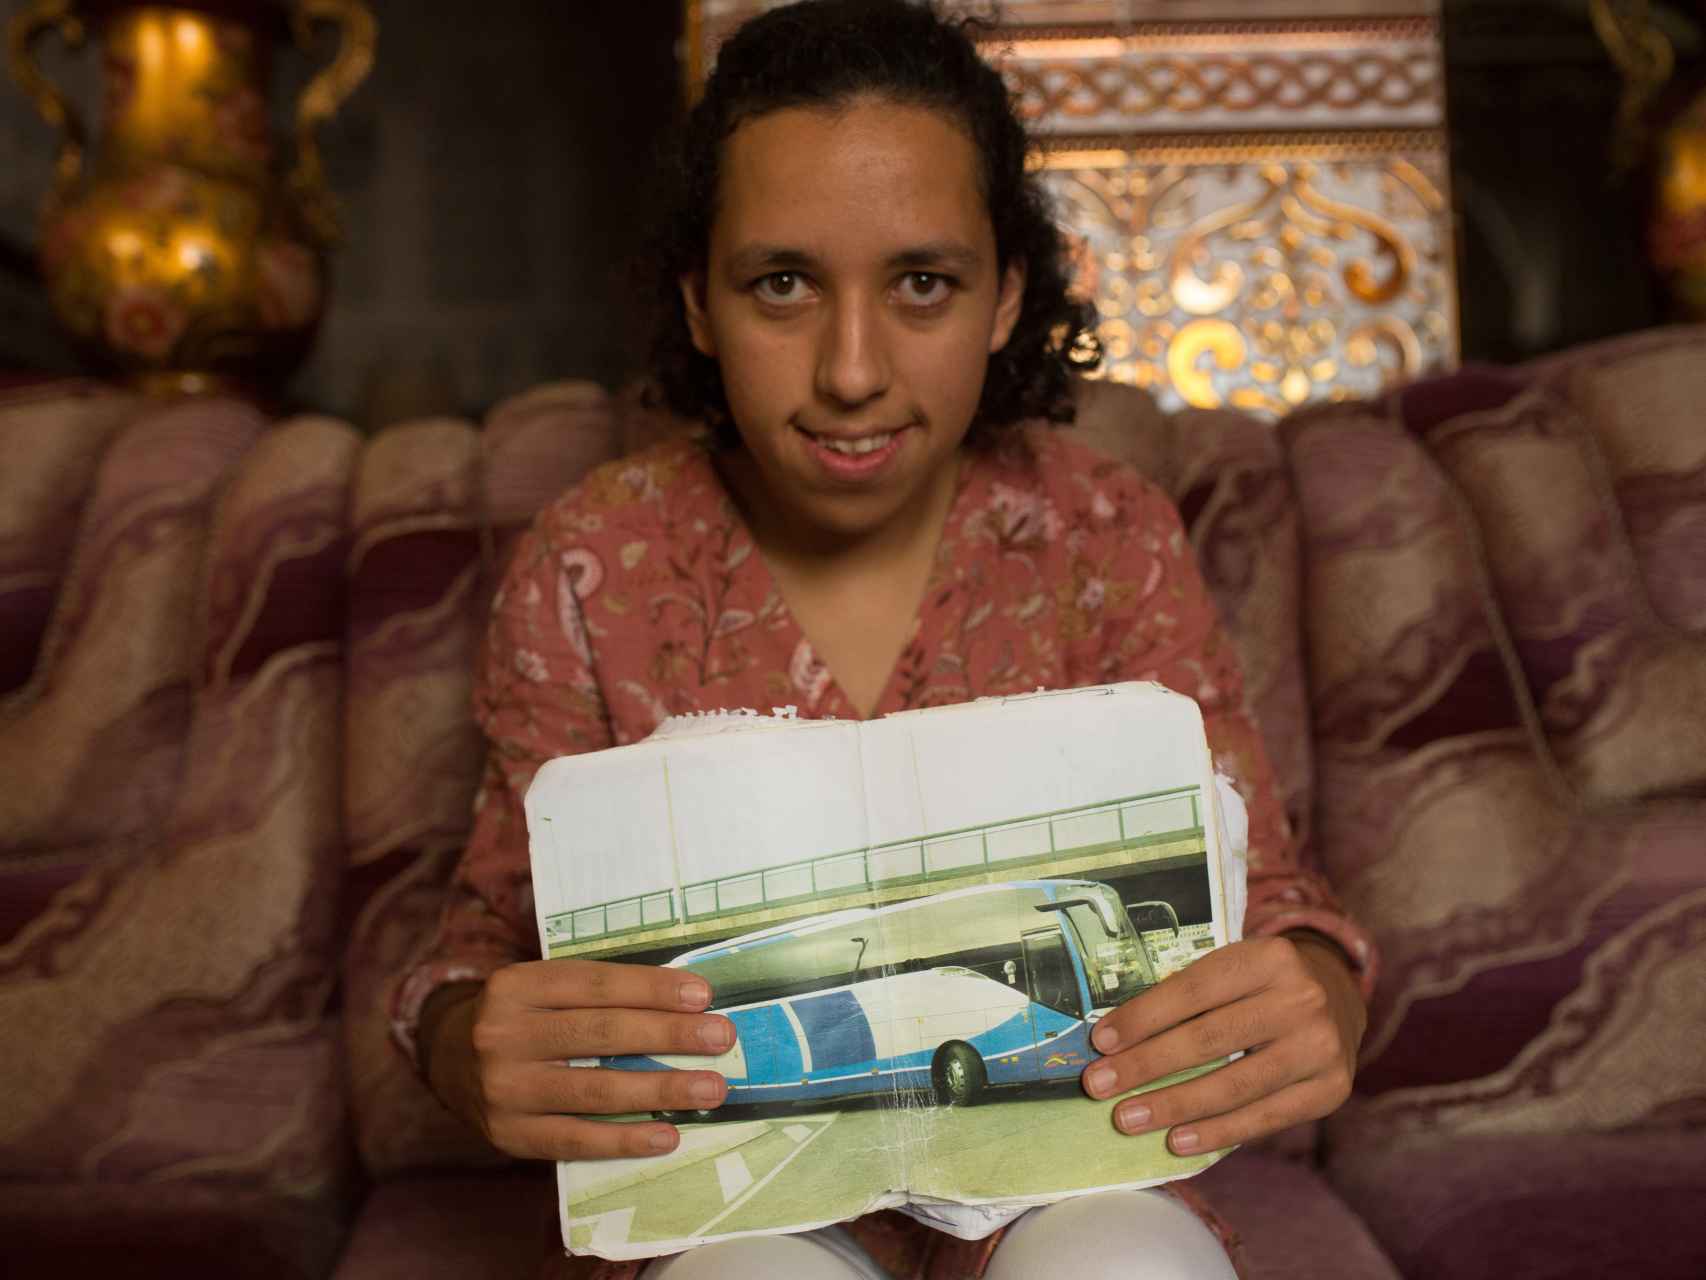 Pese a que el síndrome de Usher, Mariam viene en autobús sola desde Sevilla, donde está en una residencia, hasta Algeciras. Allí la esperan para coger el ferry, cruzar el Estrecho y llegar a Ceuta, a su casa.